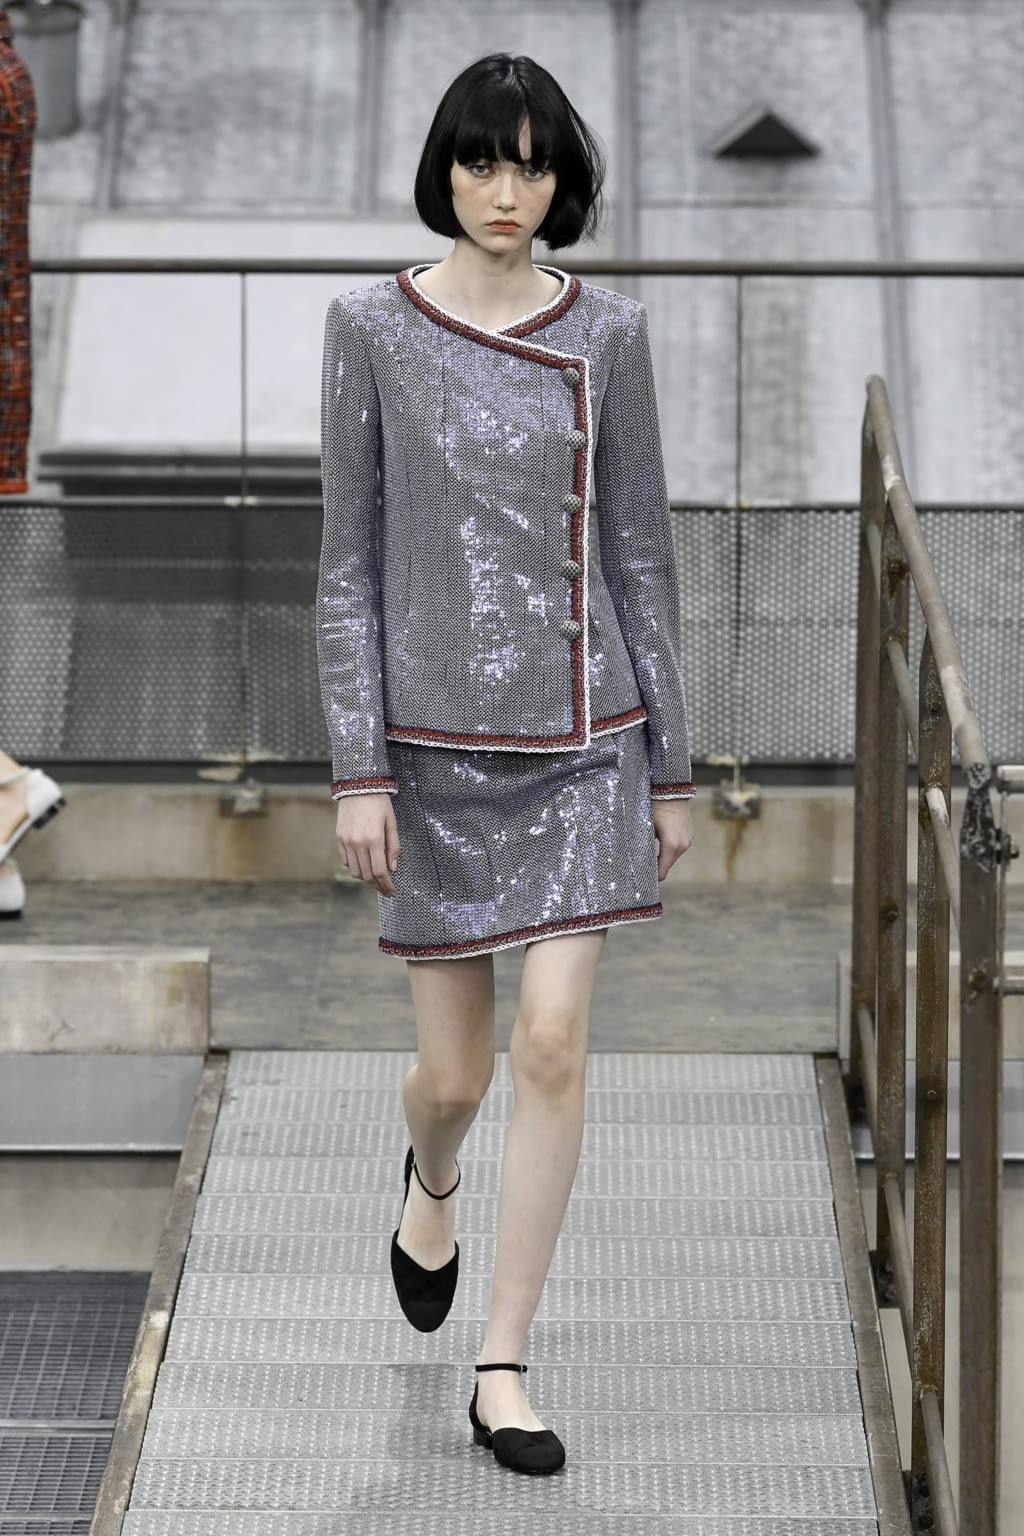 Chanel SS20 womenswear #29 - Tagwalk: The Fashion Search Engine